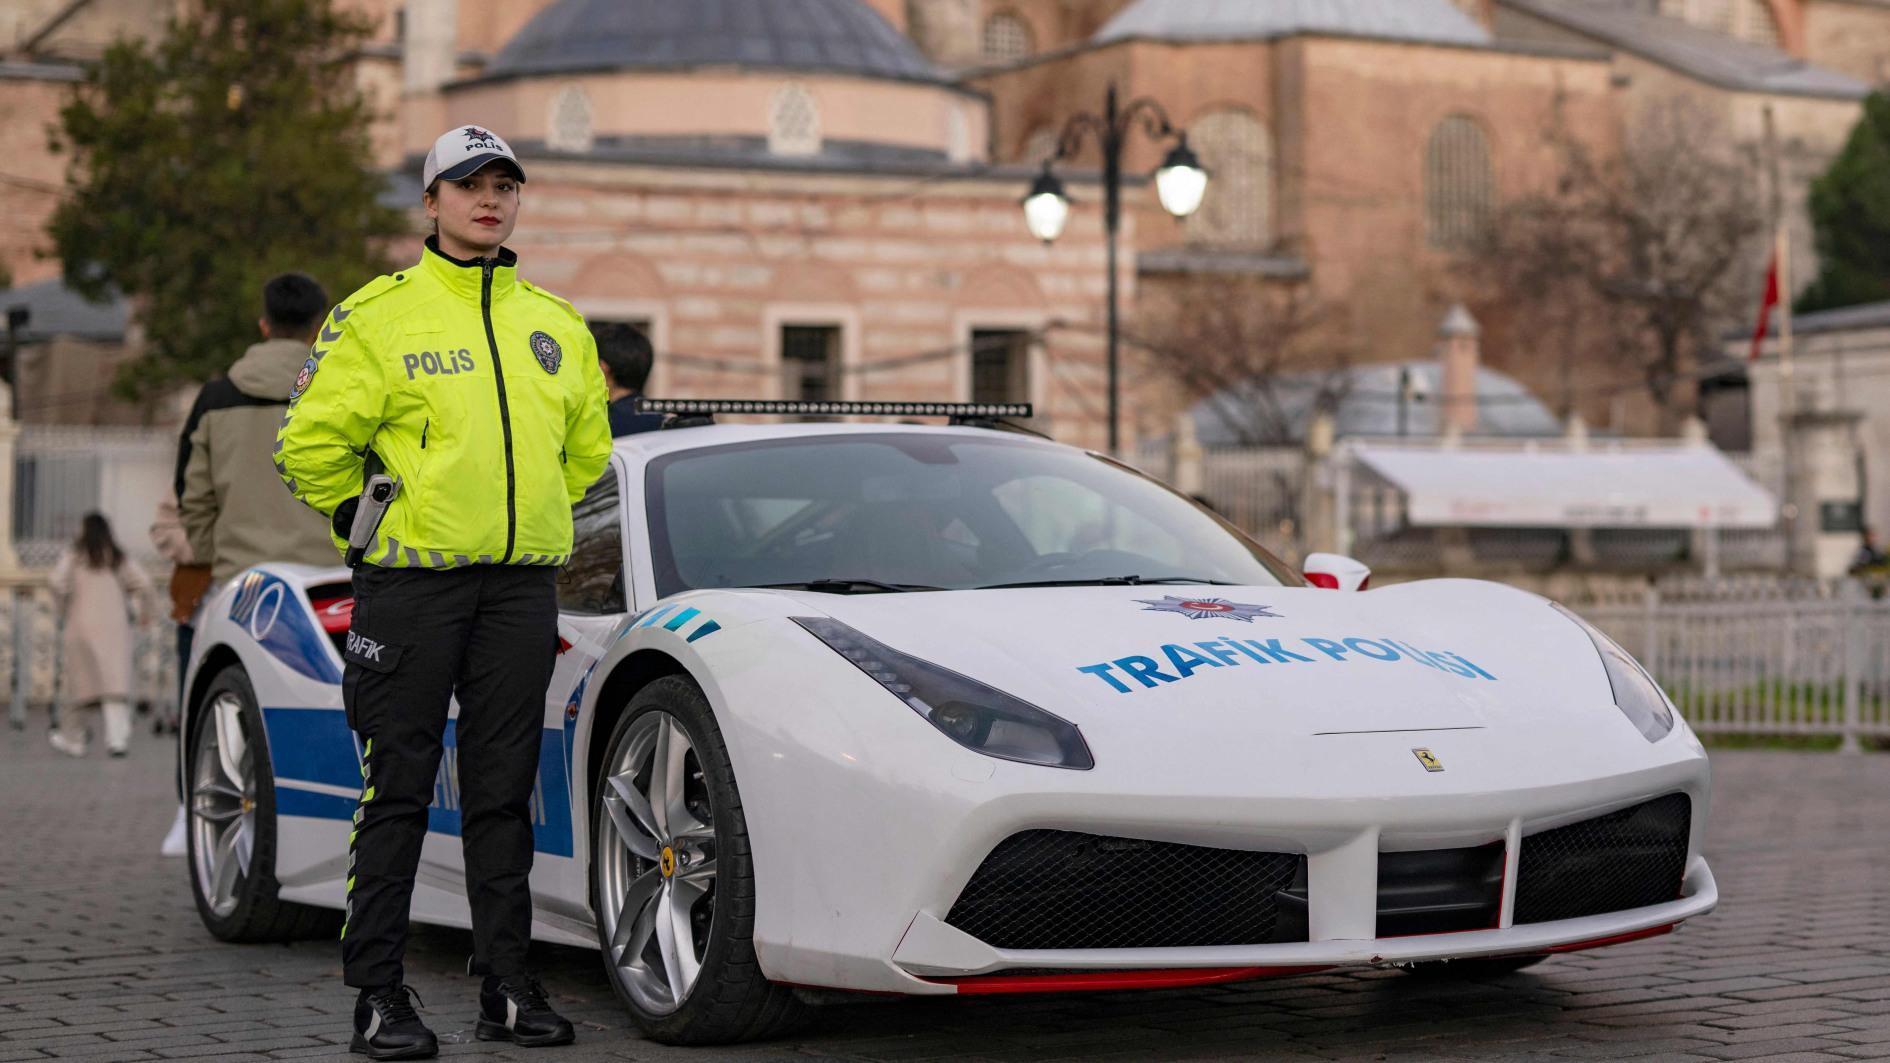 In beslag genomen luxe voertuigen starten politiepatrouille in Istanbul